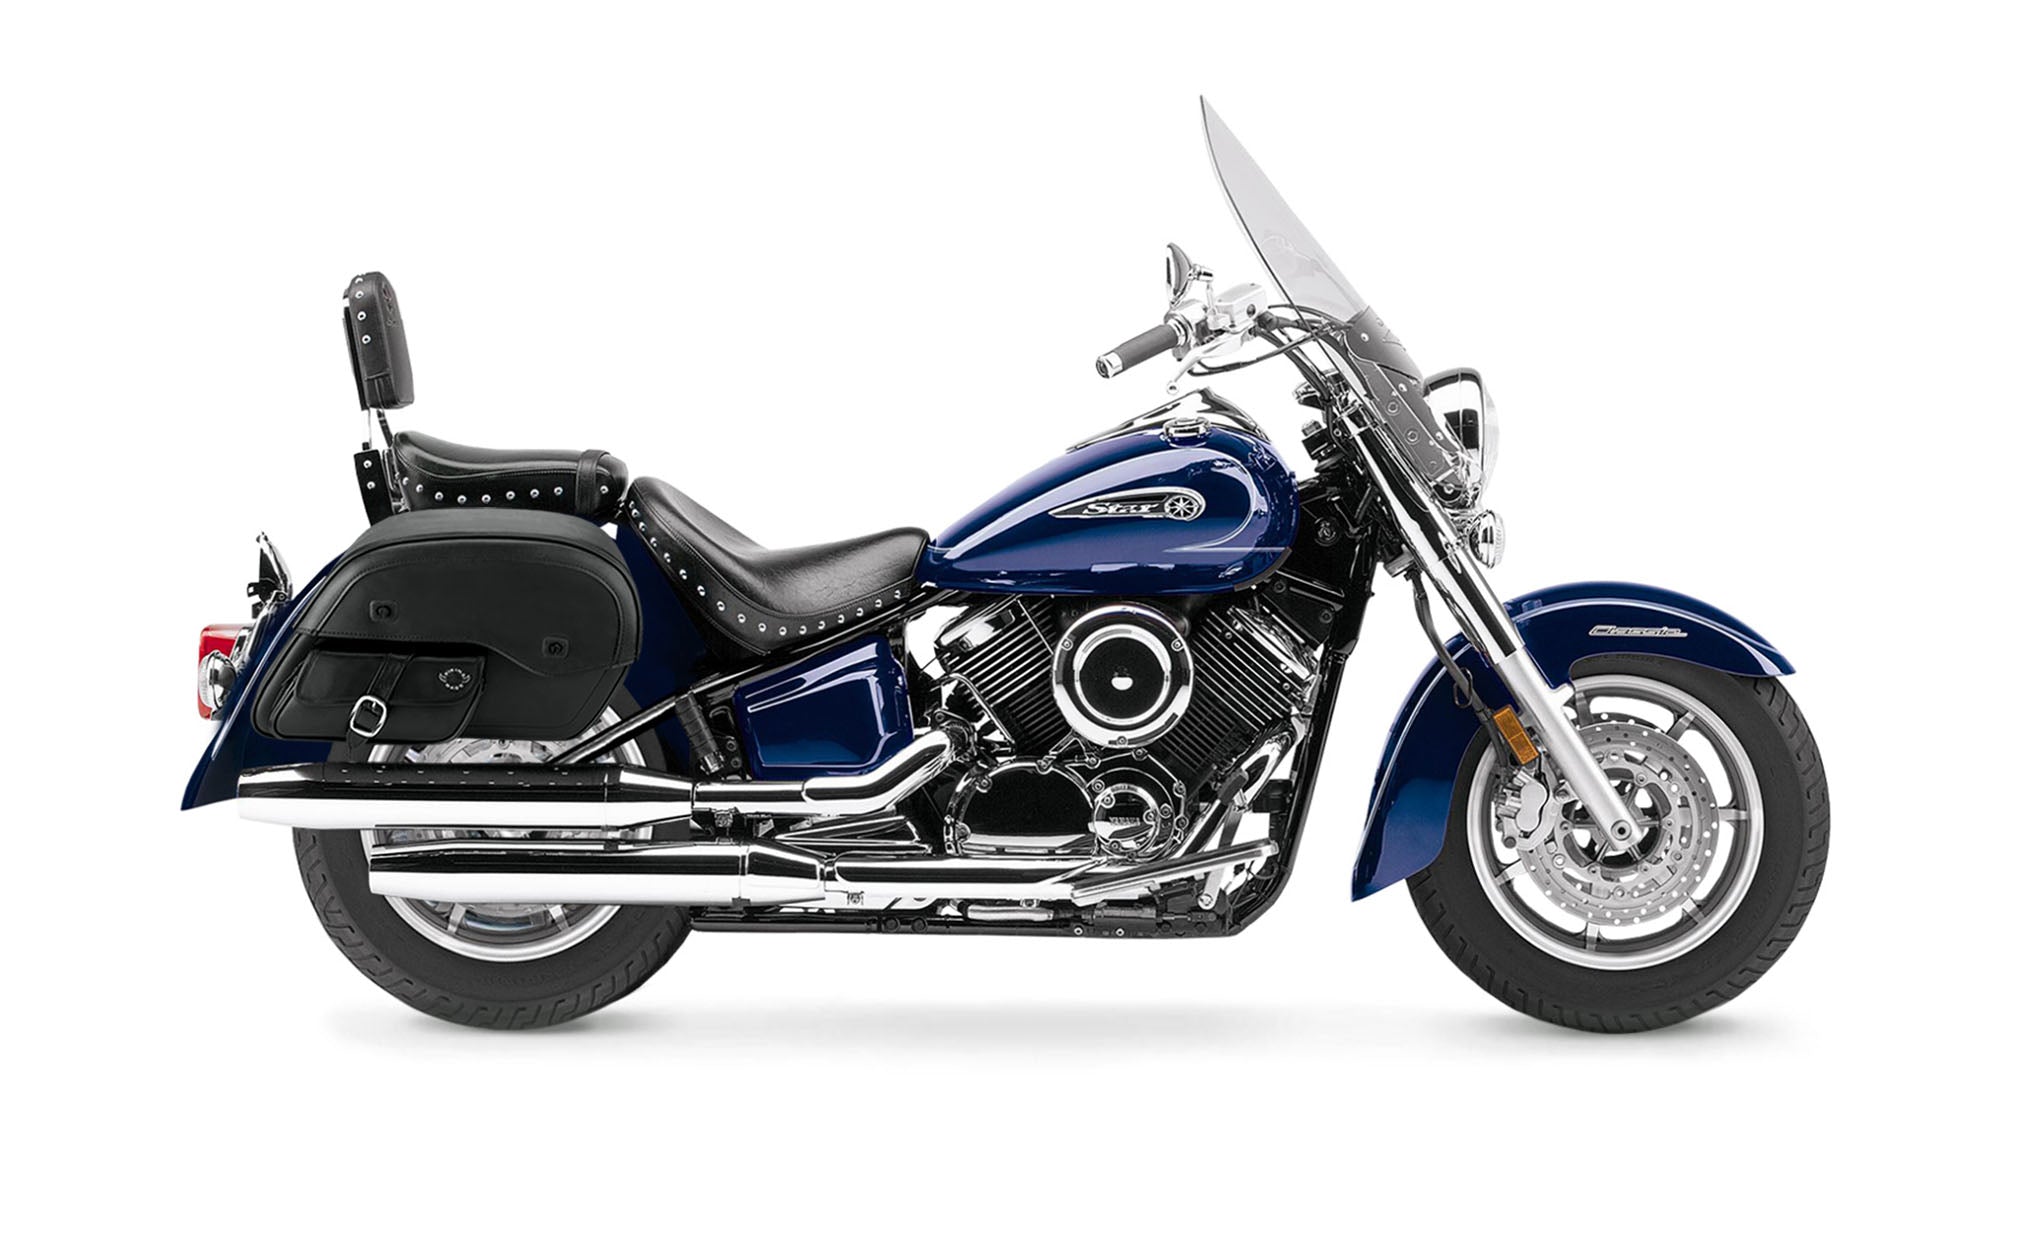 Viking Dweller Side Pocket Large Yamaha Silverado Leather Motorcycle Saddlebags on Bike Photo @expand